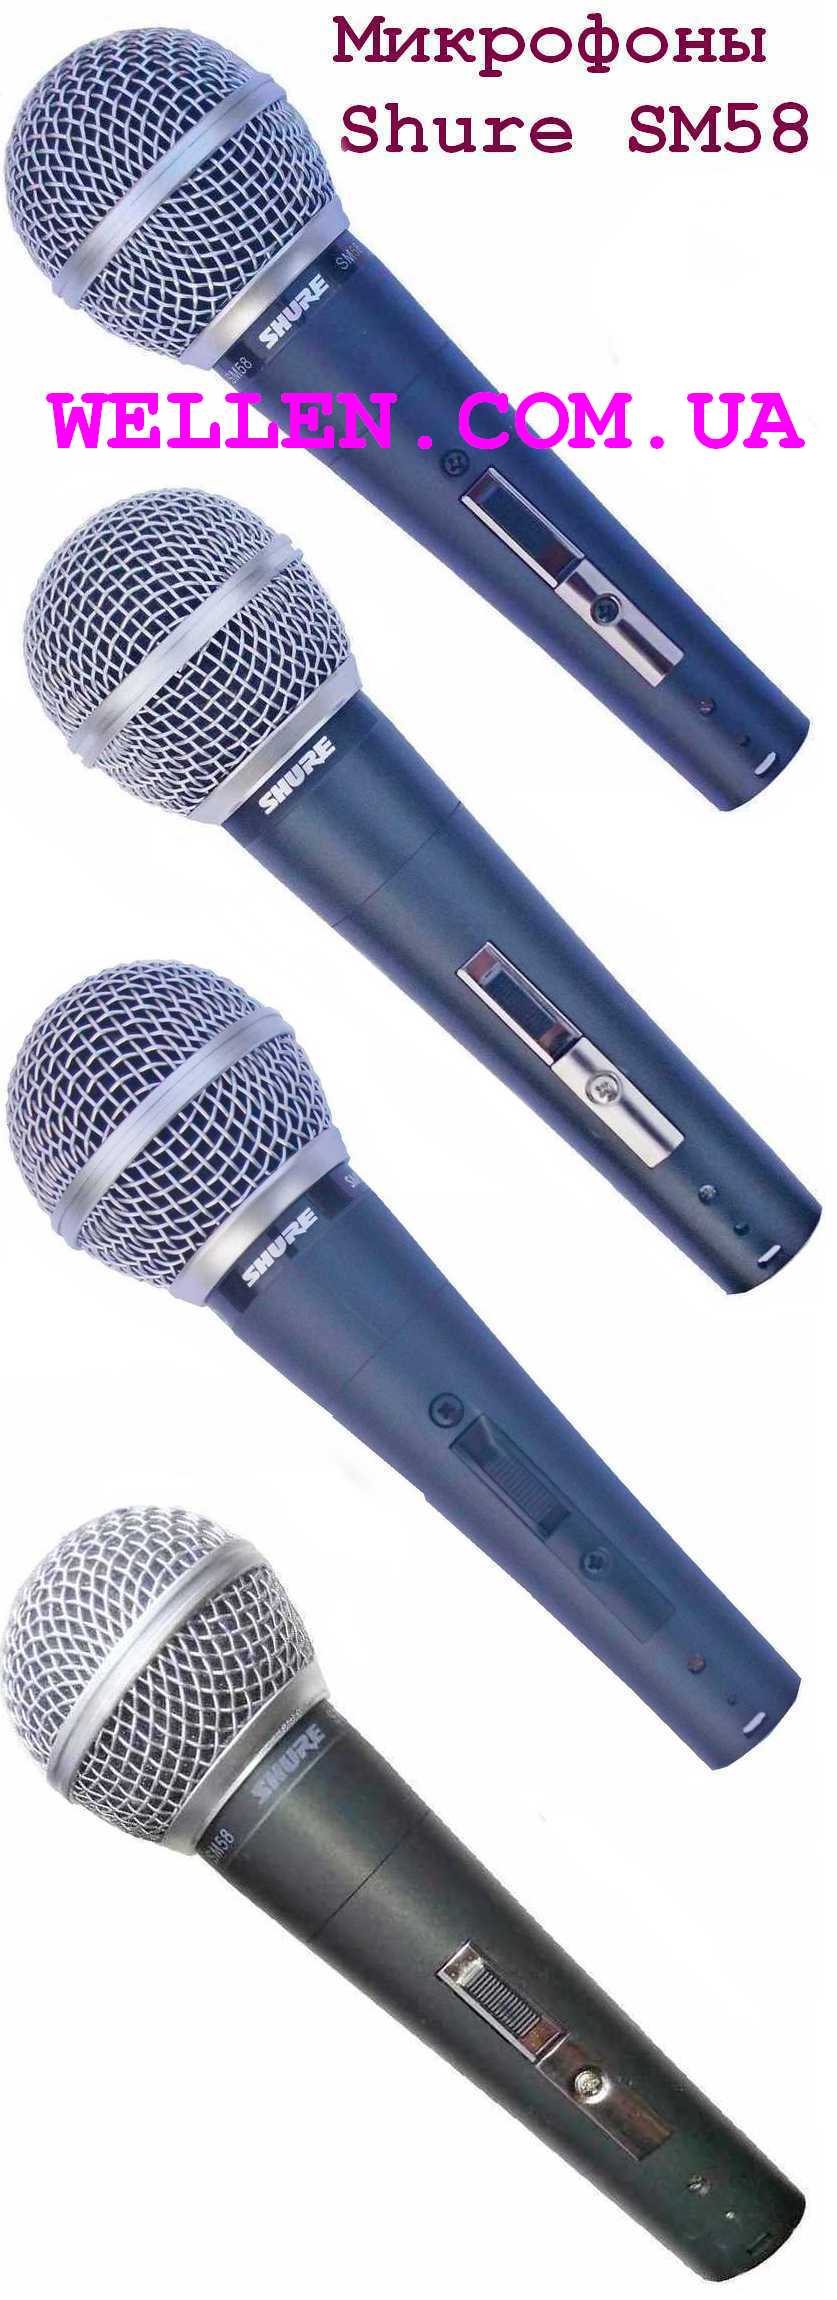 Shure SM58 шнуровий динамічний мікрофон.